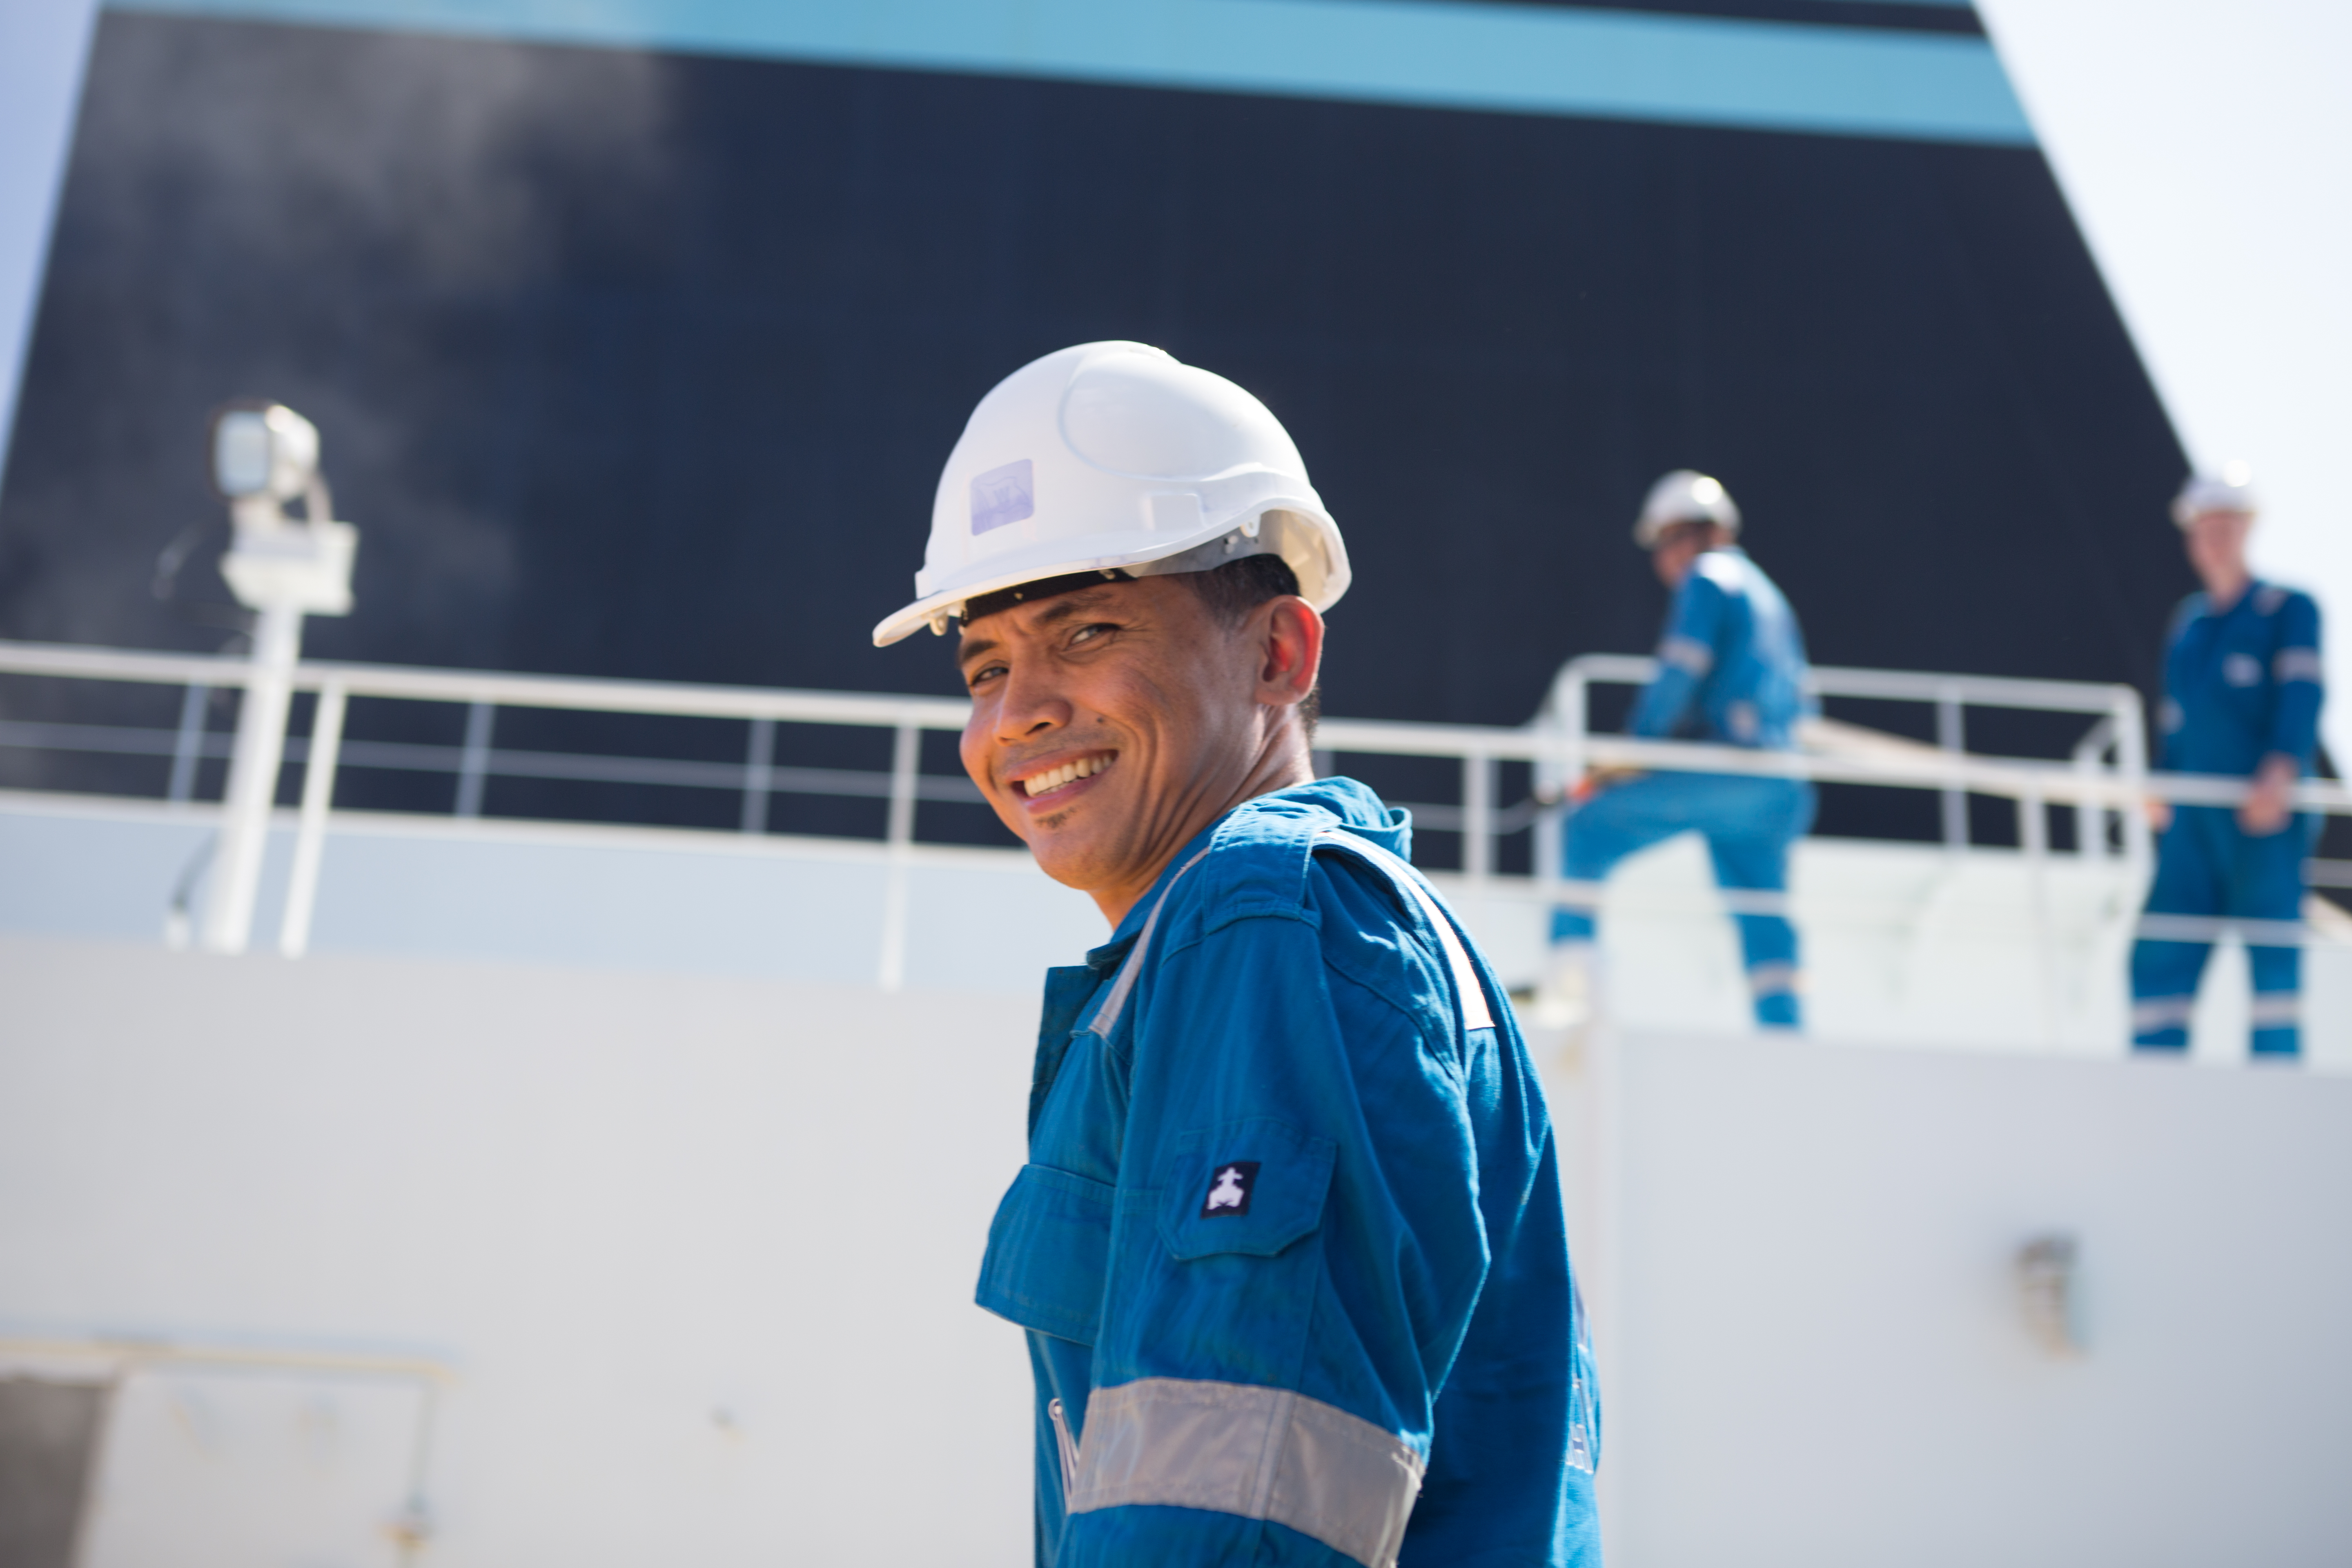 seafarer turns and smiles